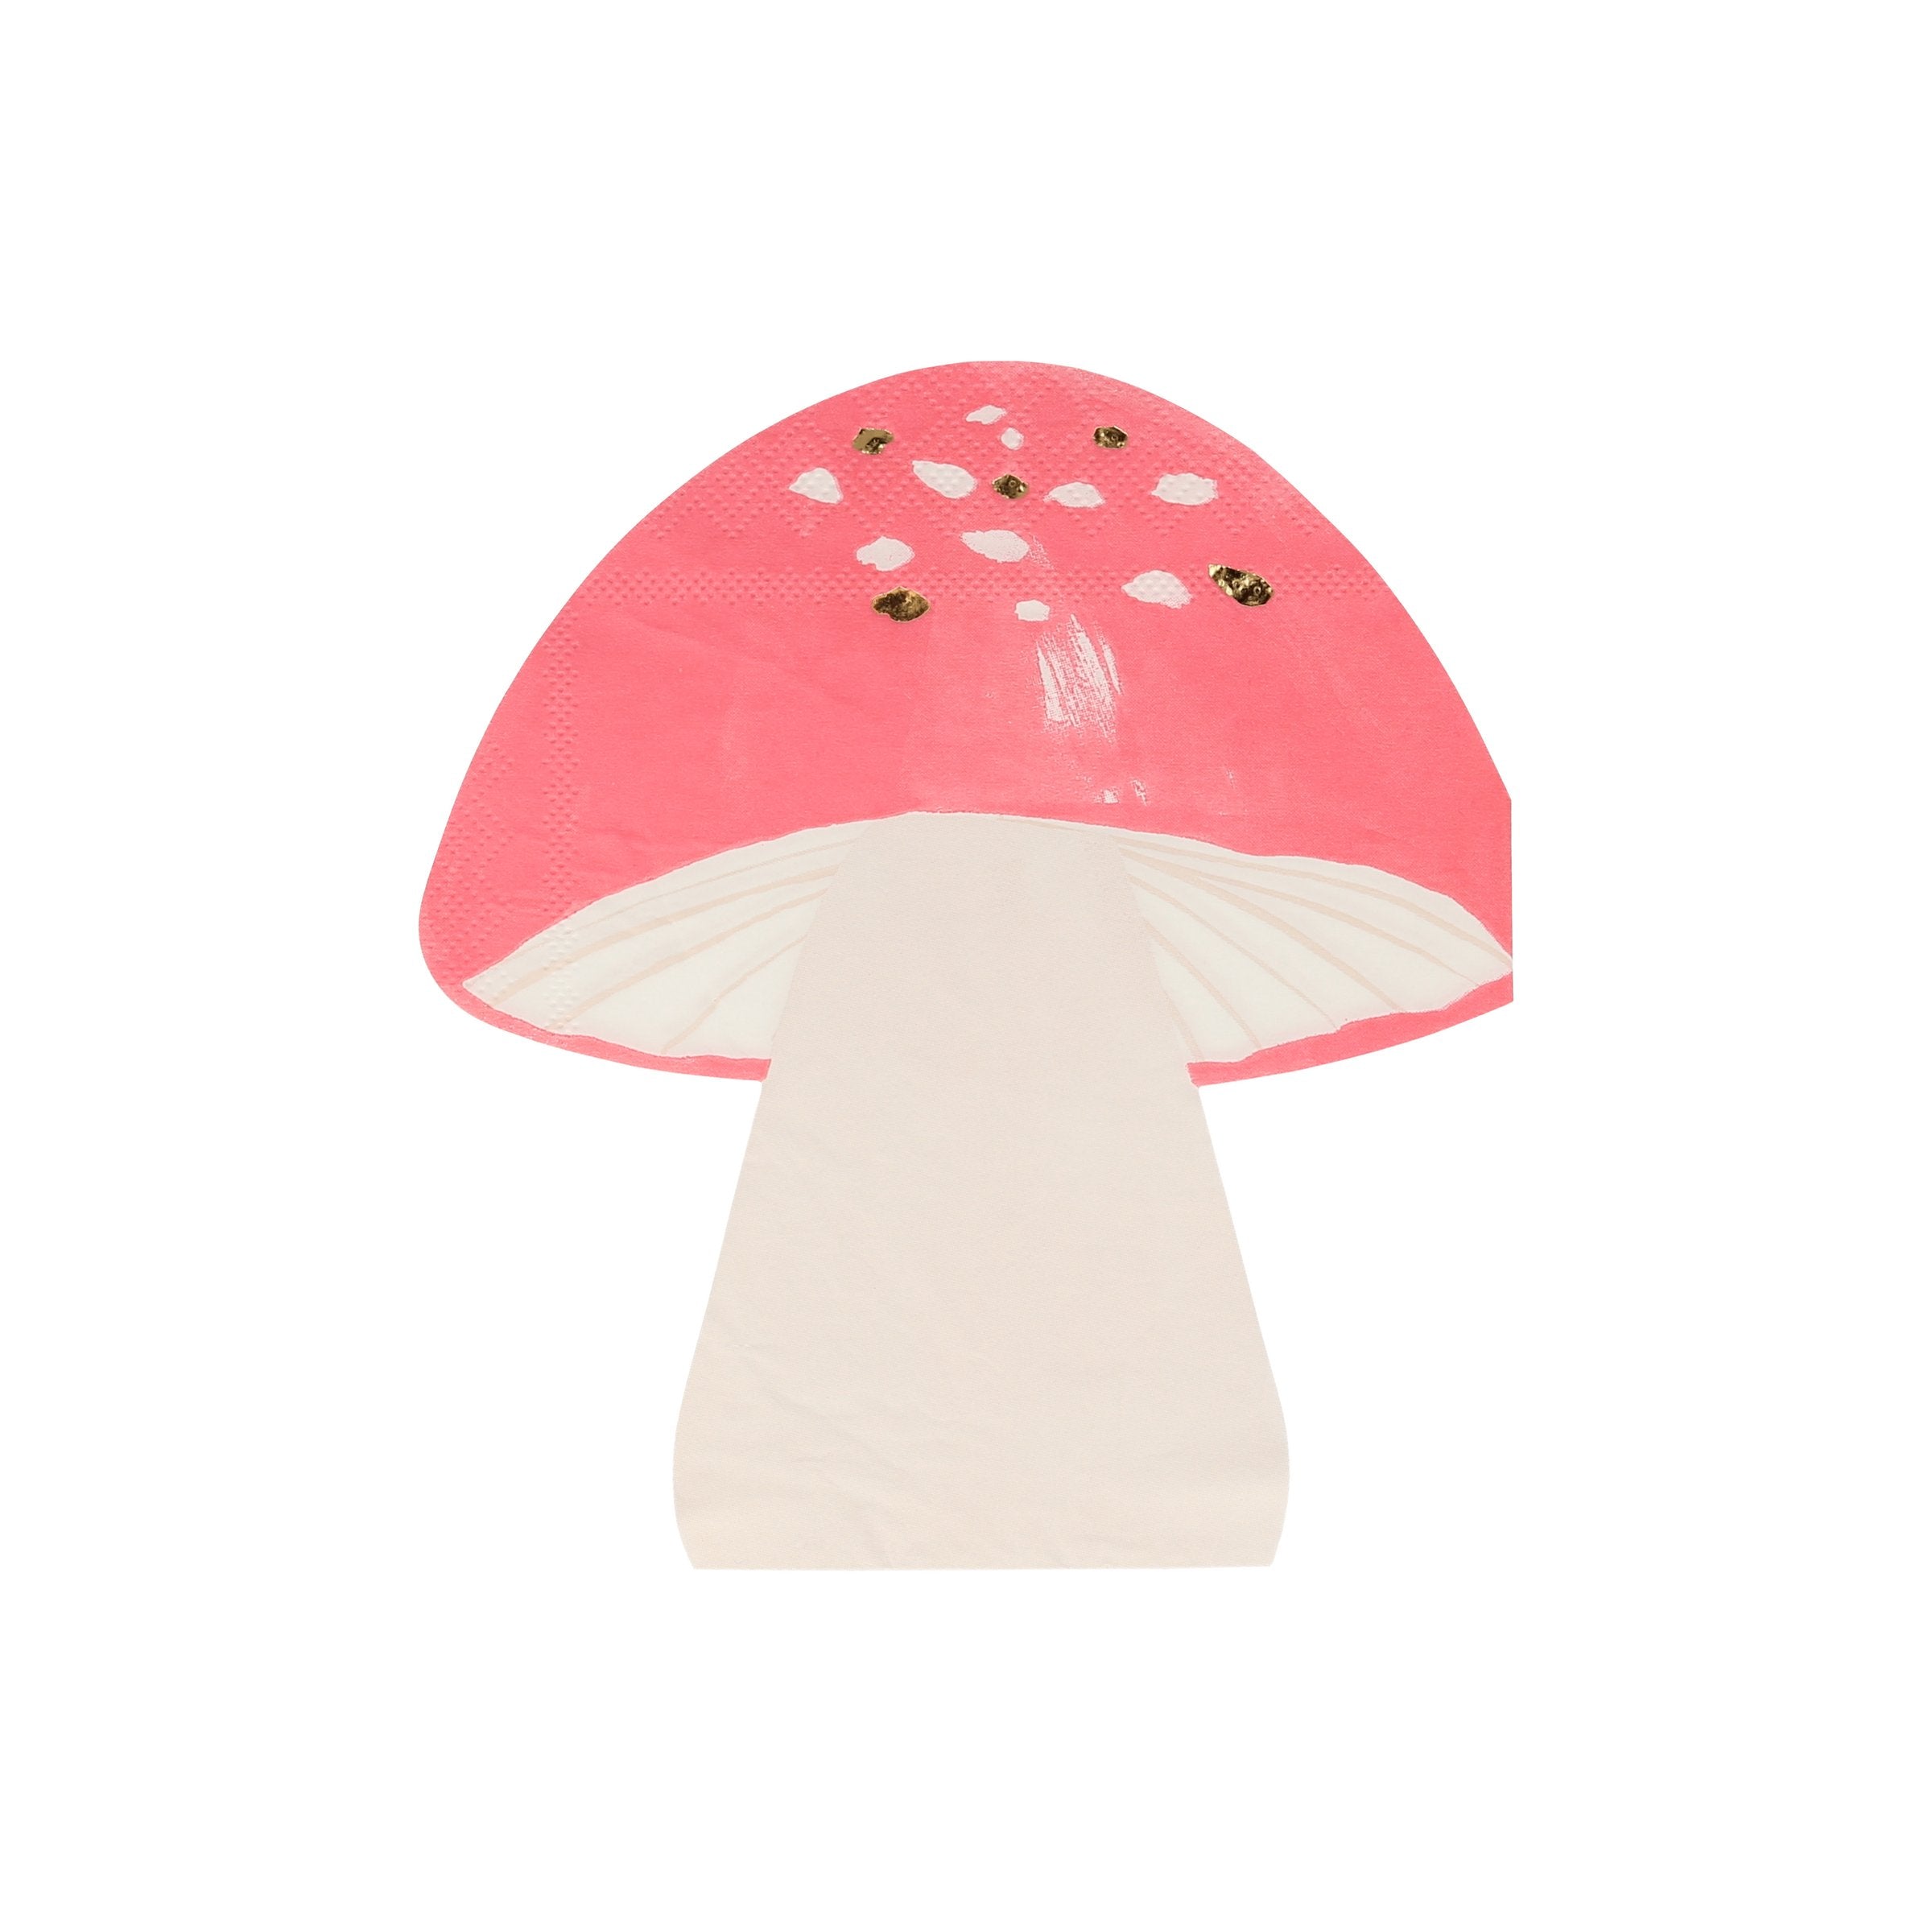 Fairy Mushroom Napkins